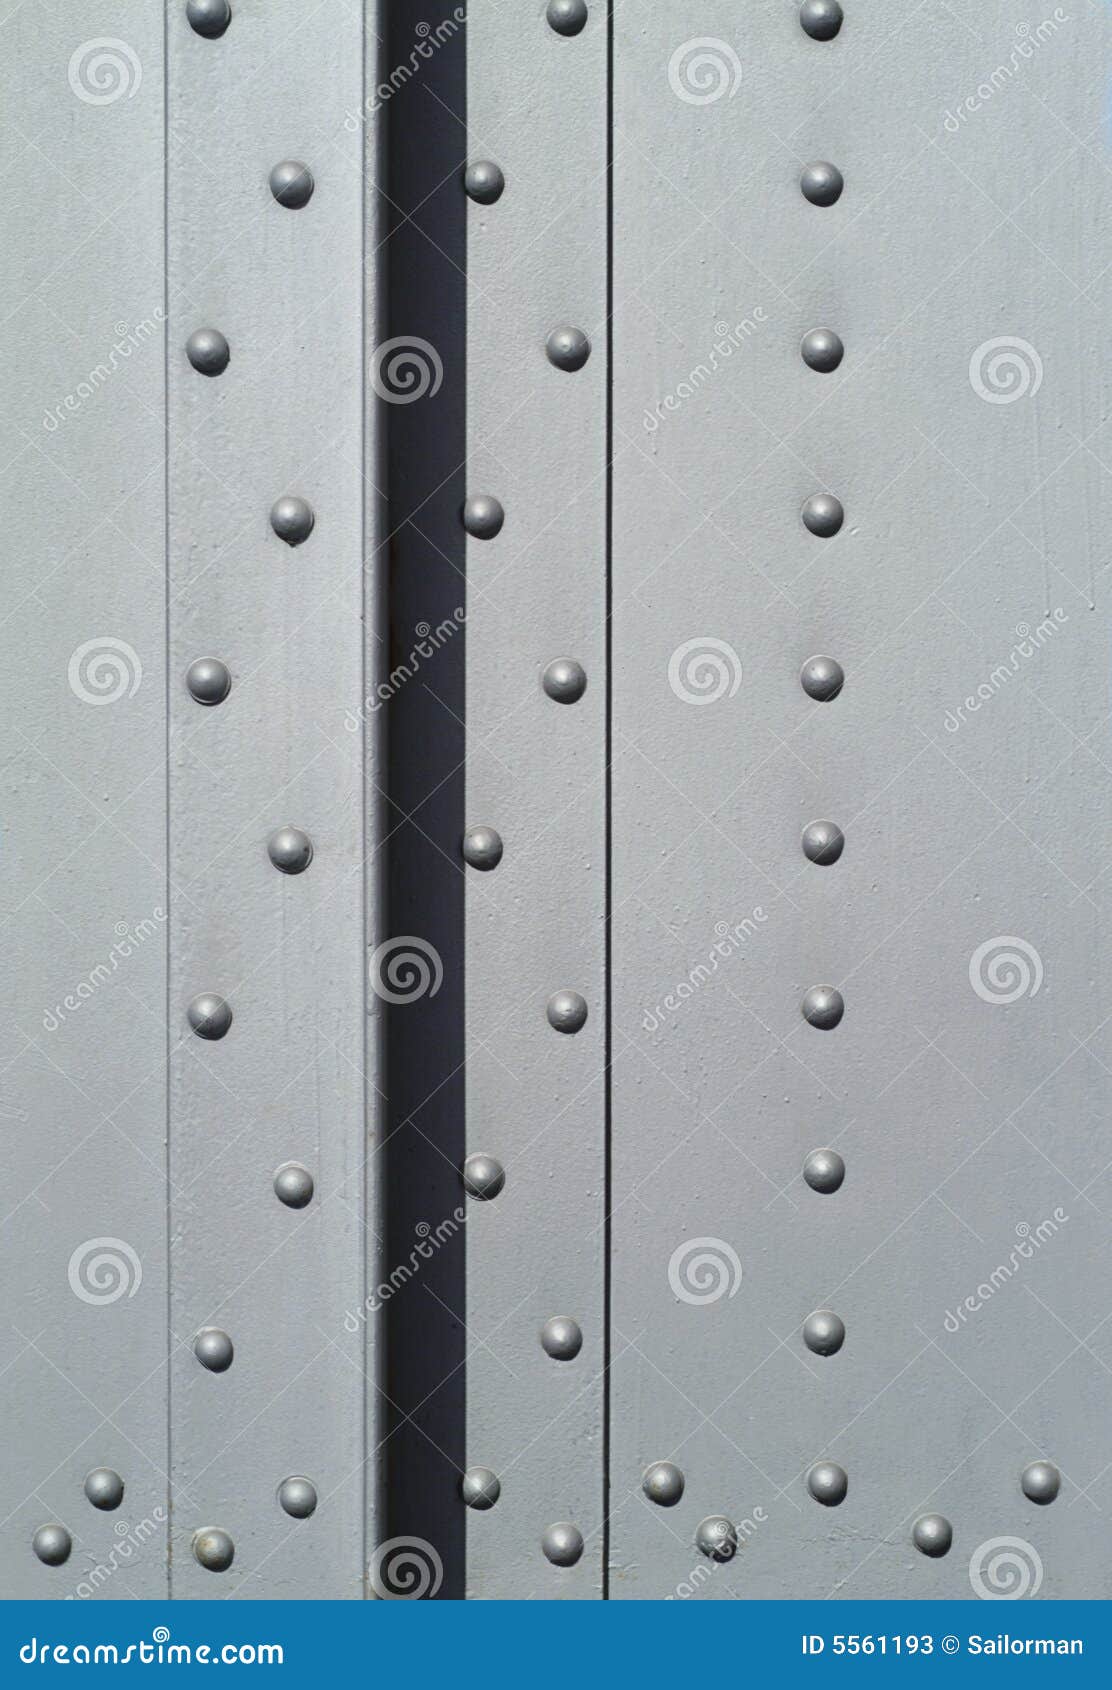 rivets in a steel girder